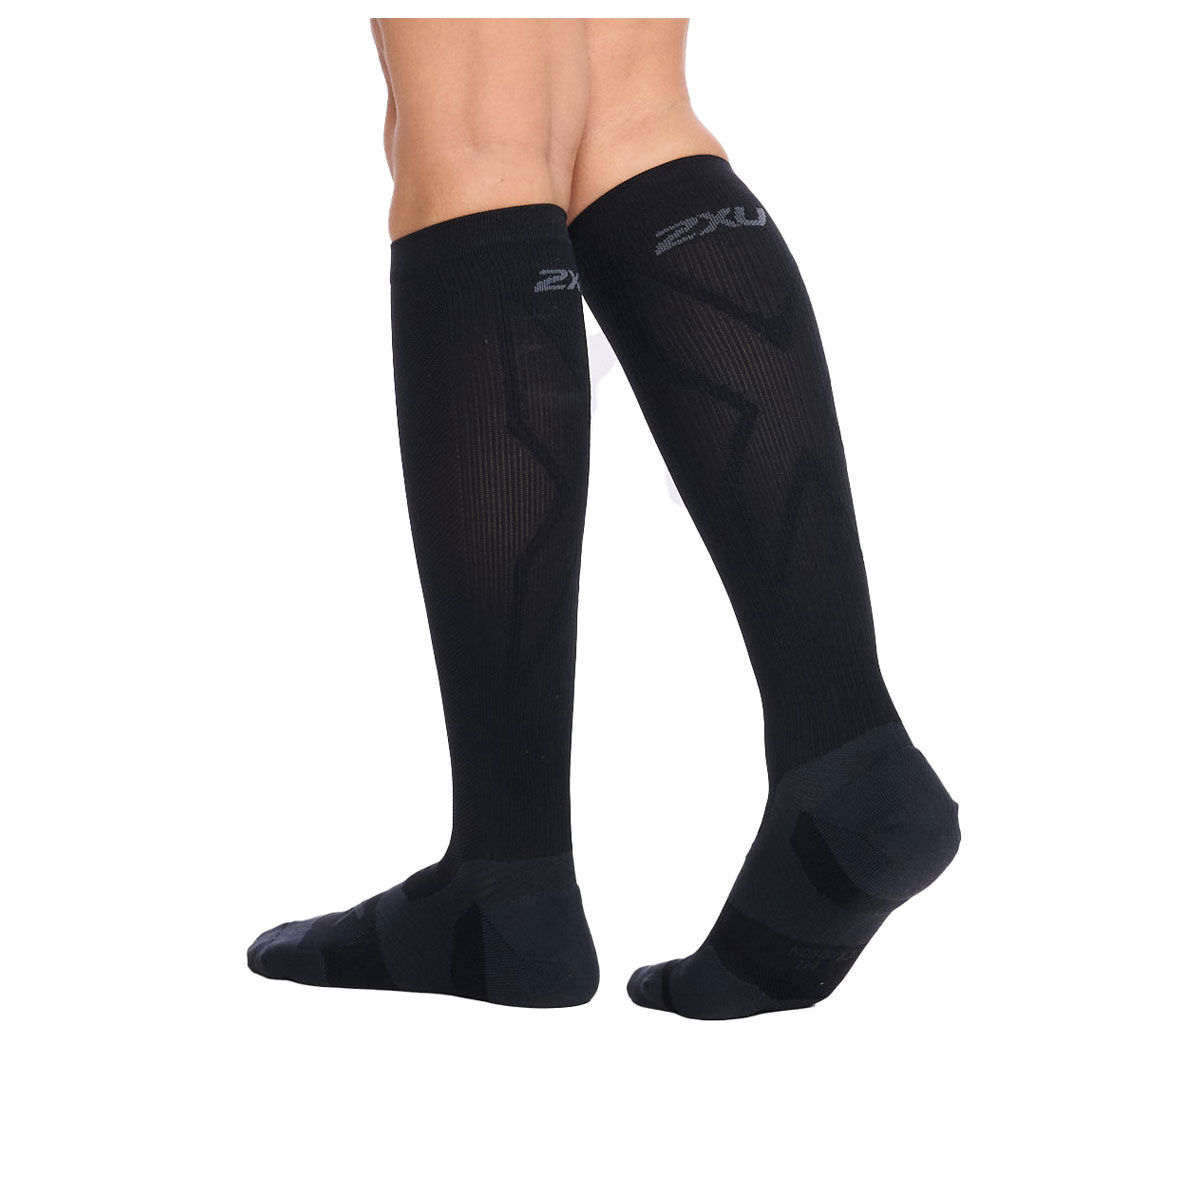 Black & White Cushioned Knee-High Socks